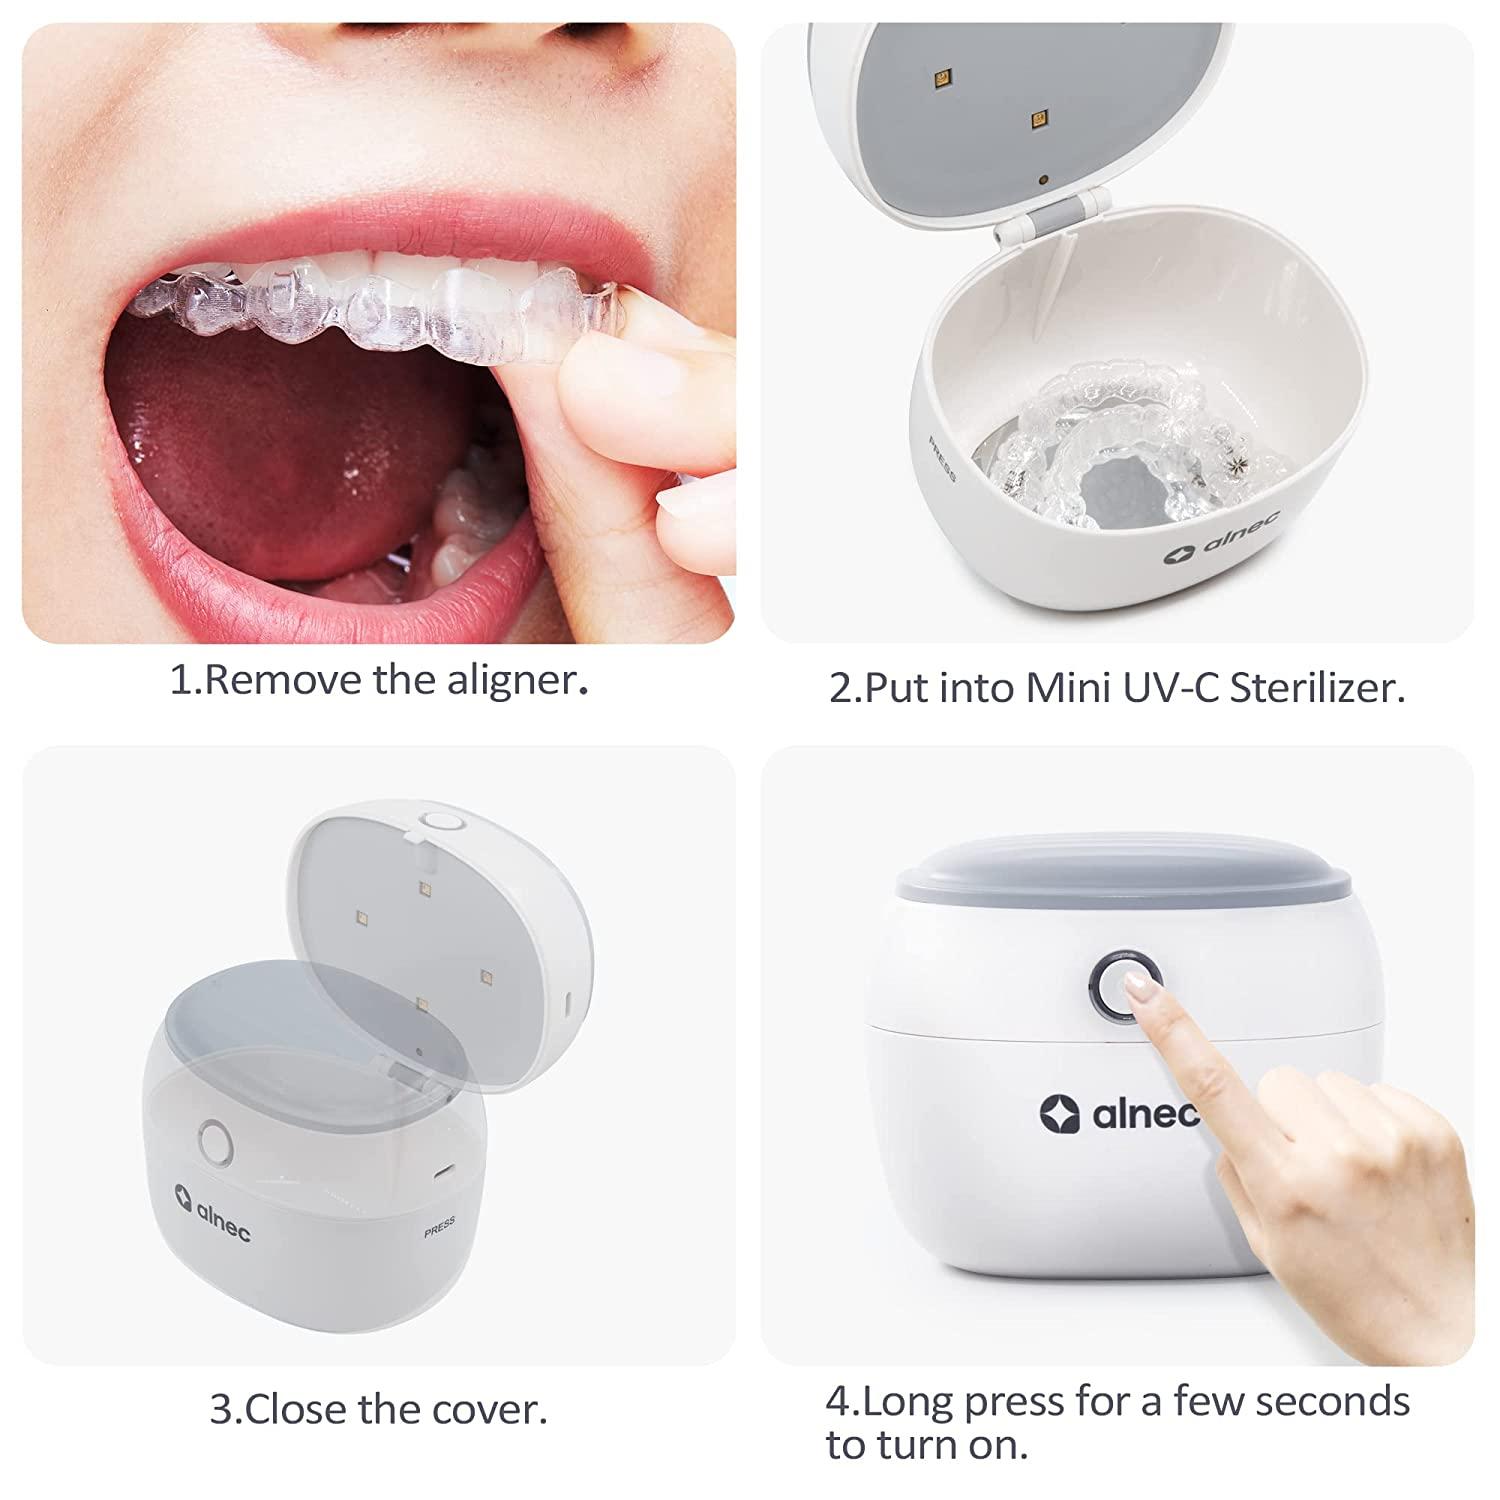 Ultrasonic Cleaner and UV Light Sanitizer, Denture Case, Night